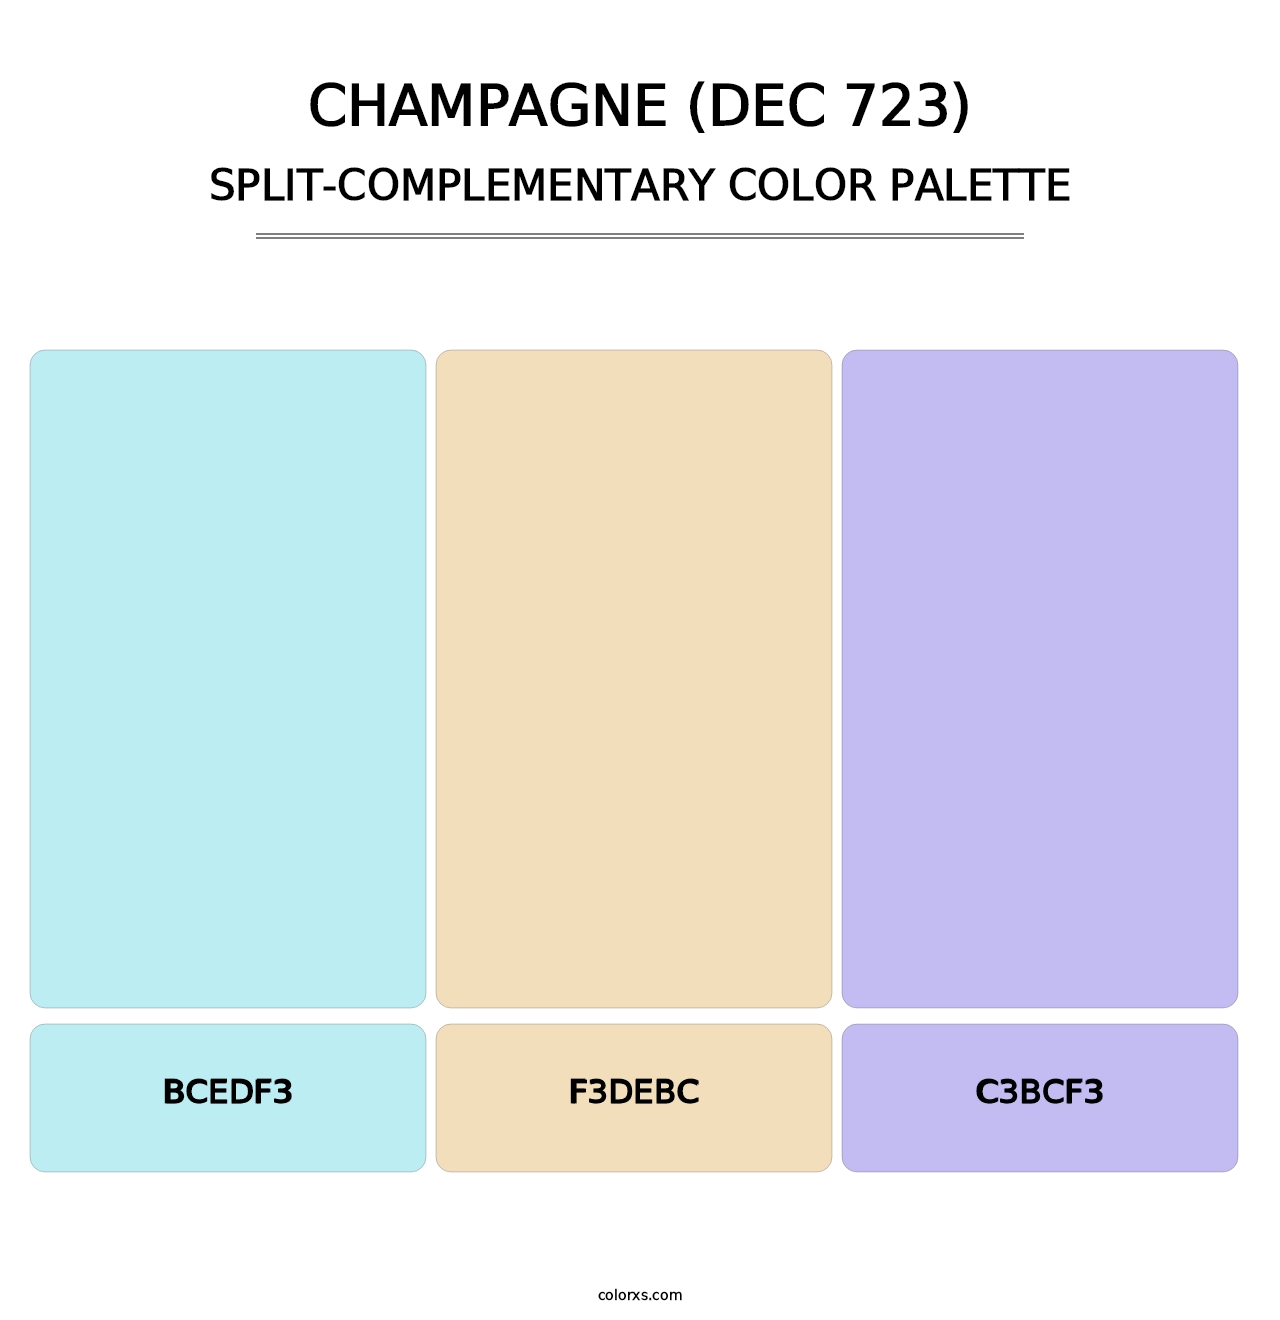 Champagne (DEC 723) - Split-Complementary Color Palette